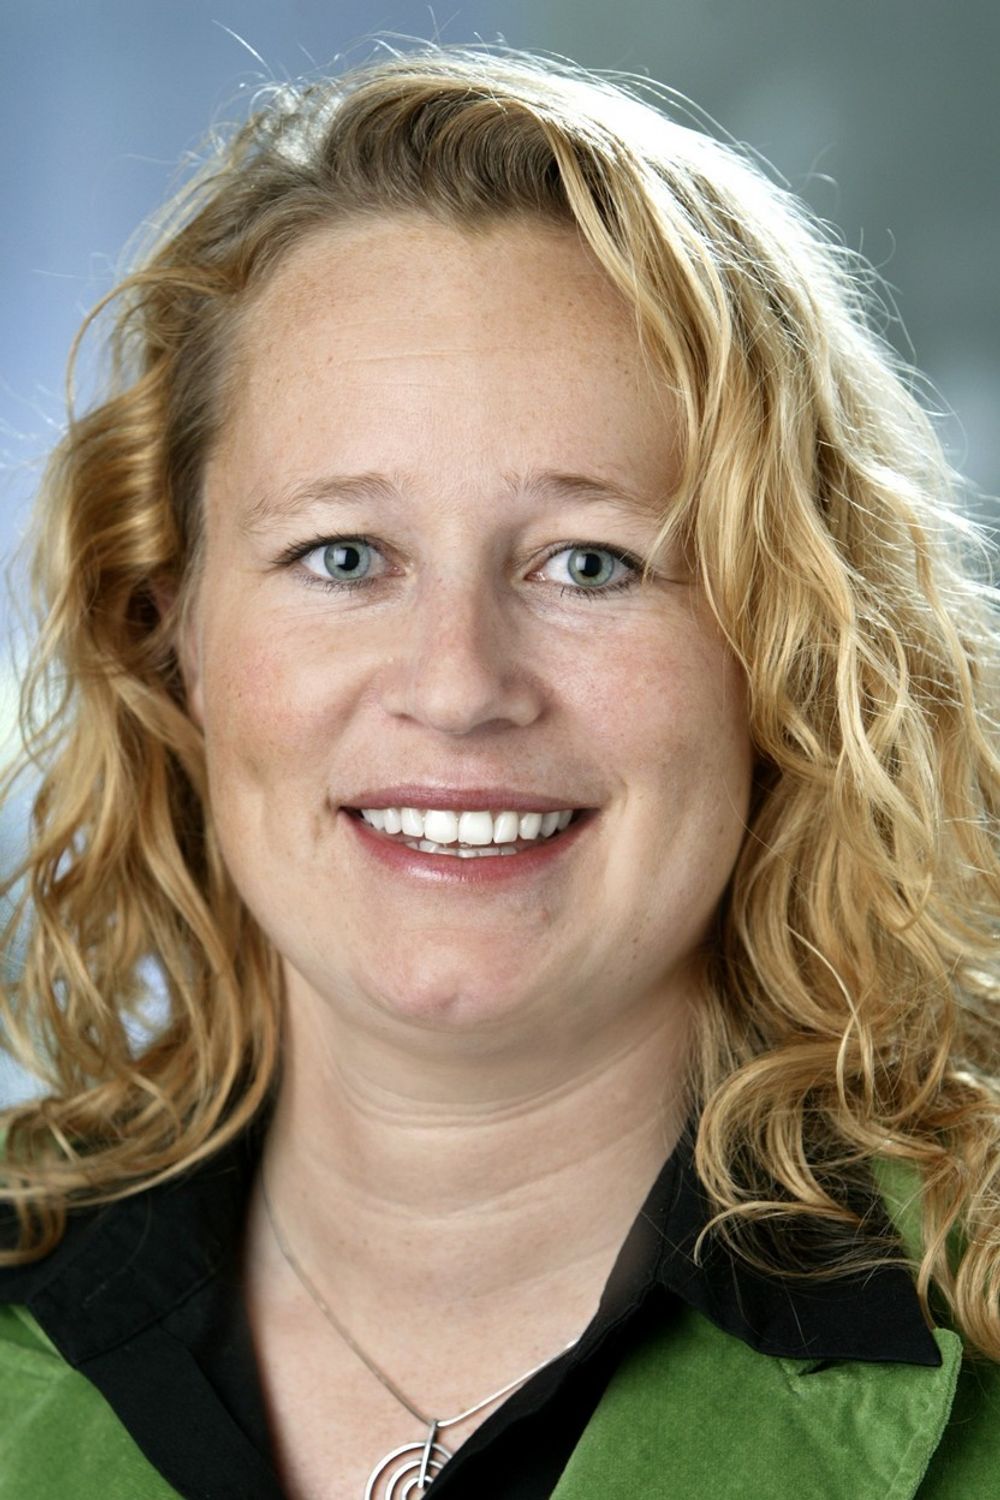 VIL IKKE OPPGI SALGSTALL: Anna Svensson, skandinavisk informasjonssjef hos Nokia.